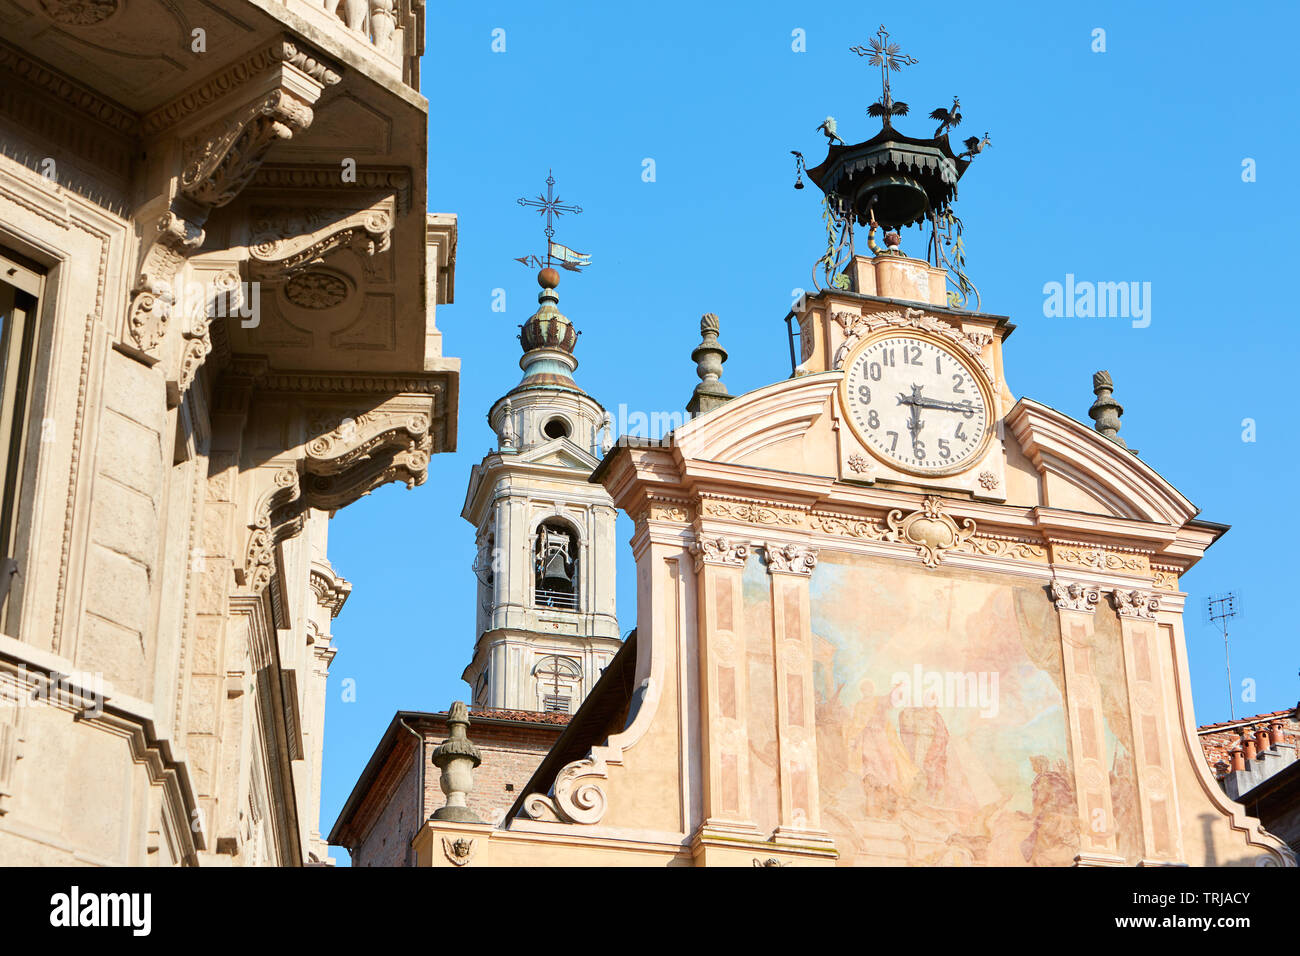 MONDOVI, Italien - 15. AUGUST 2016: St. Peter und Paul Kirche und Glockenturm mit Automat an einem sonnigen Sommertag, blauer Himmel in Mondovi, Italien. Stockfoto